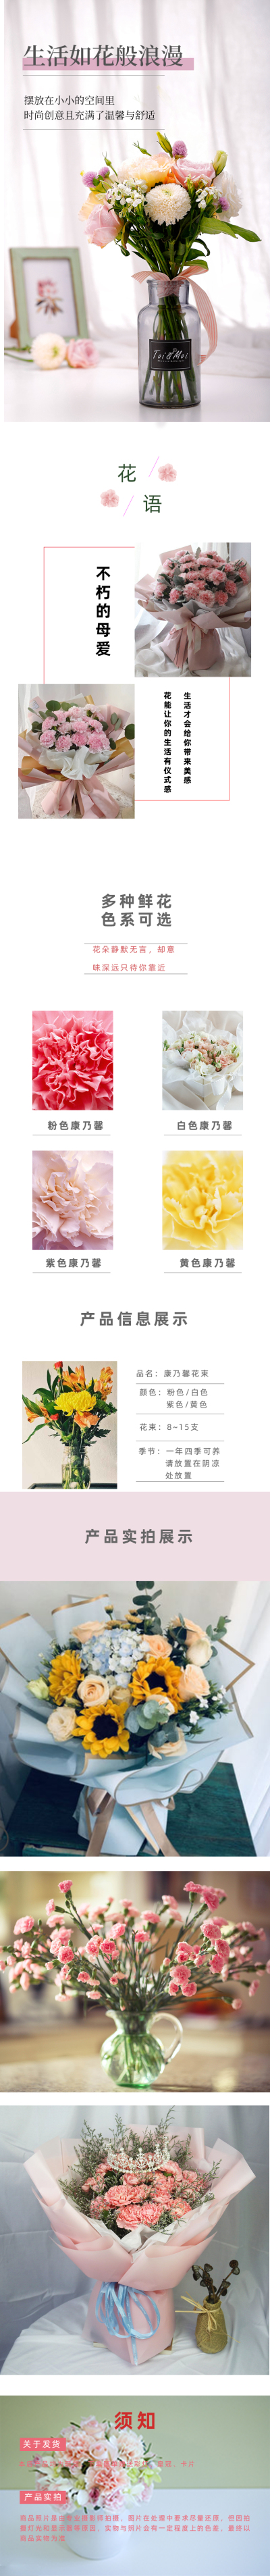 详情页---向日葵康乃馨鲜花设计